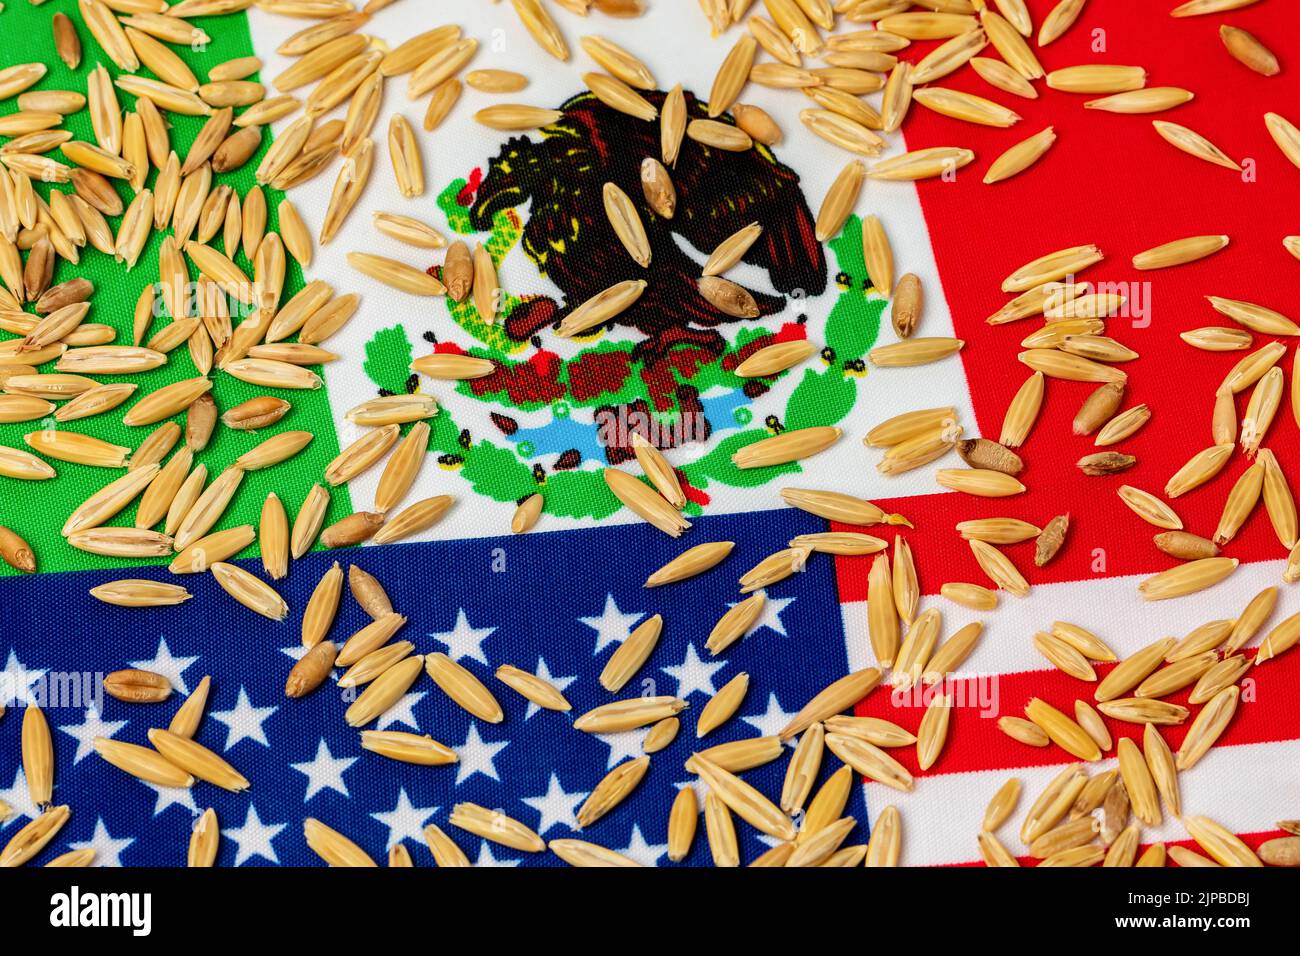 États-Unis d'Amérique, drapeaux du Mexique et avoine. Concept d'accord commercial sur l'avoine, d'importations et d'exportations. Banque D'Images